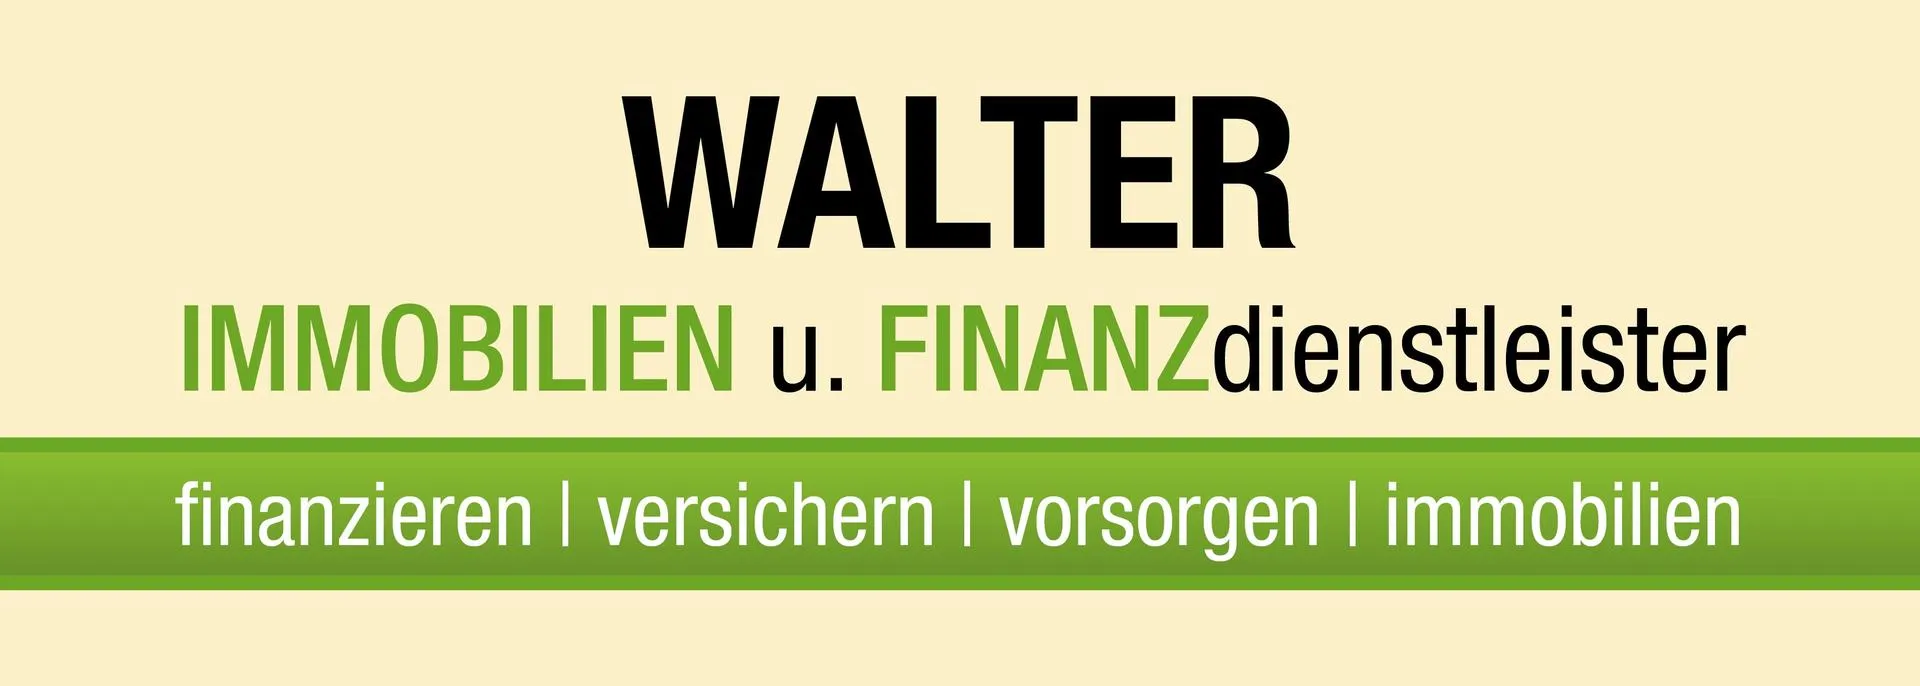 Makler WALTER Finanz der FINANZdienstleister logo